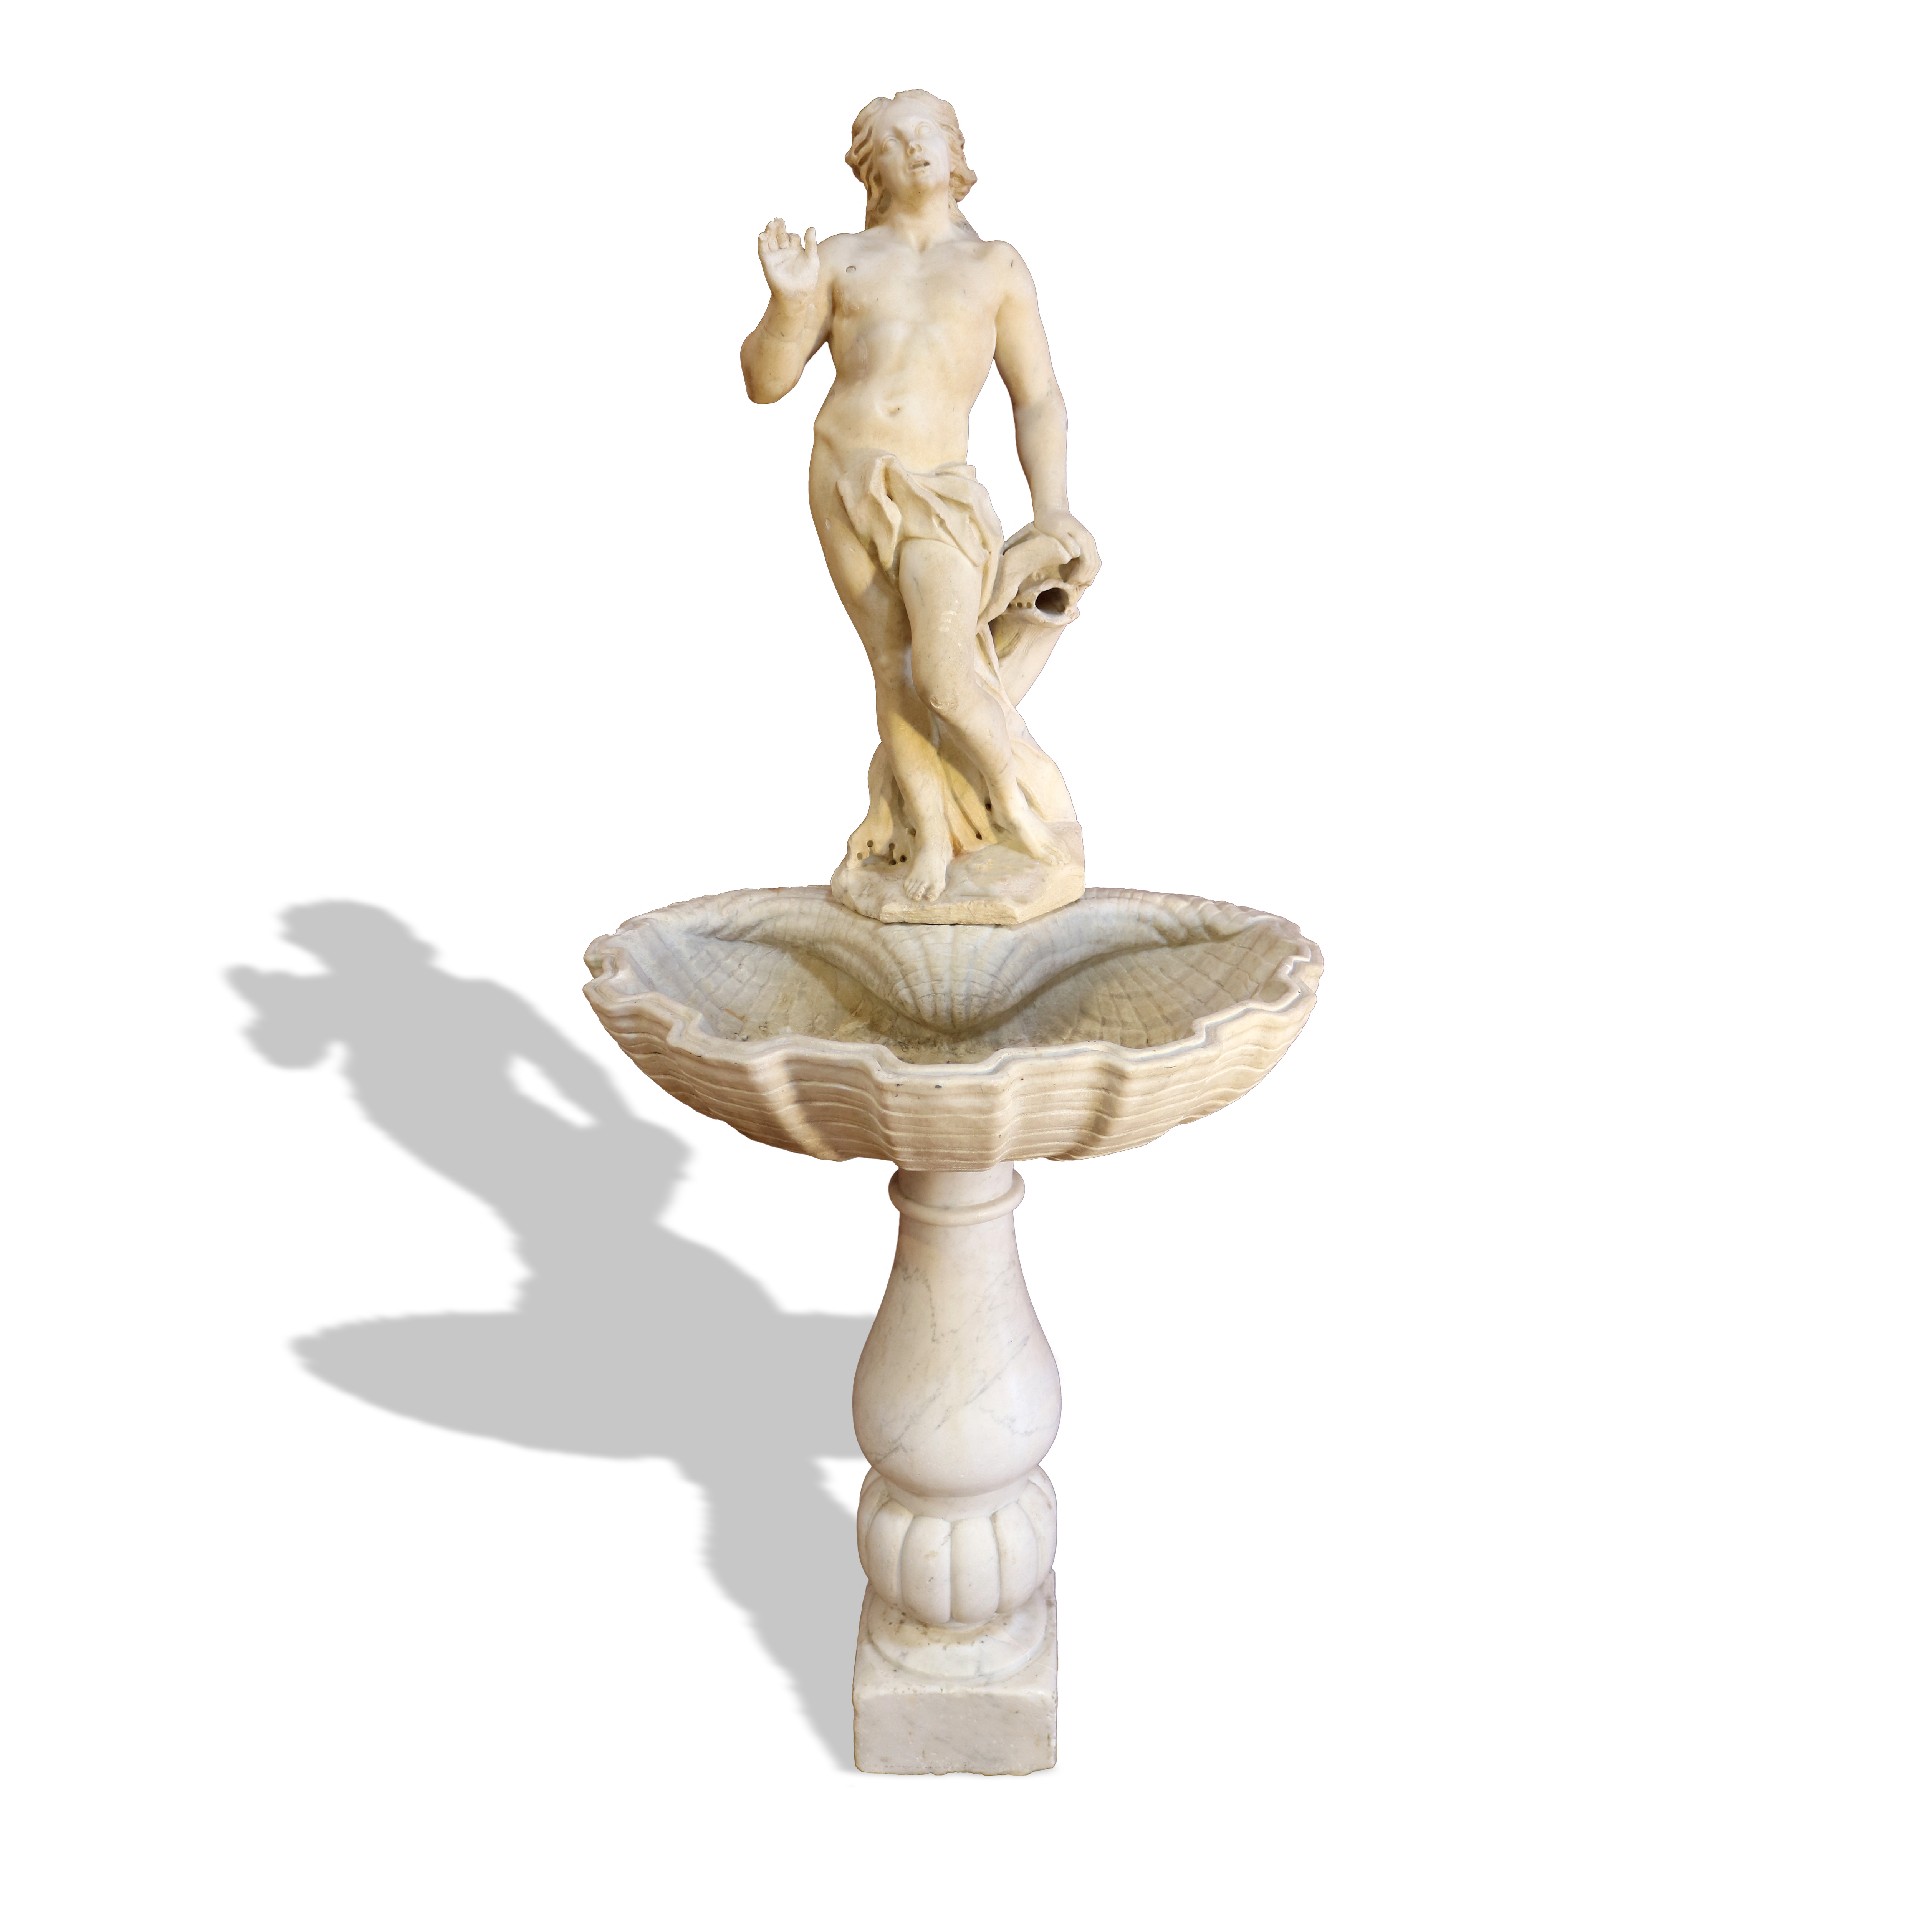 Fontana antica in marmo.  - Fontane Antiche - Arredo Giardino - Prodotti - Antichità Fiorillo